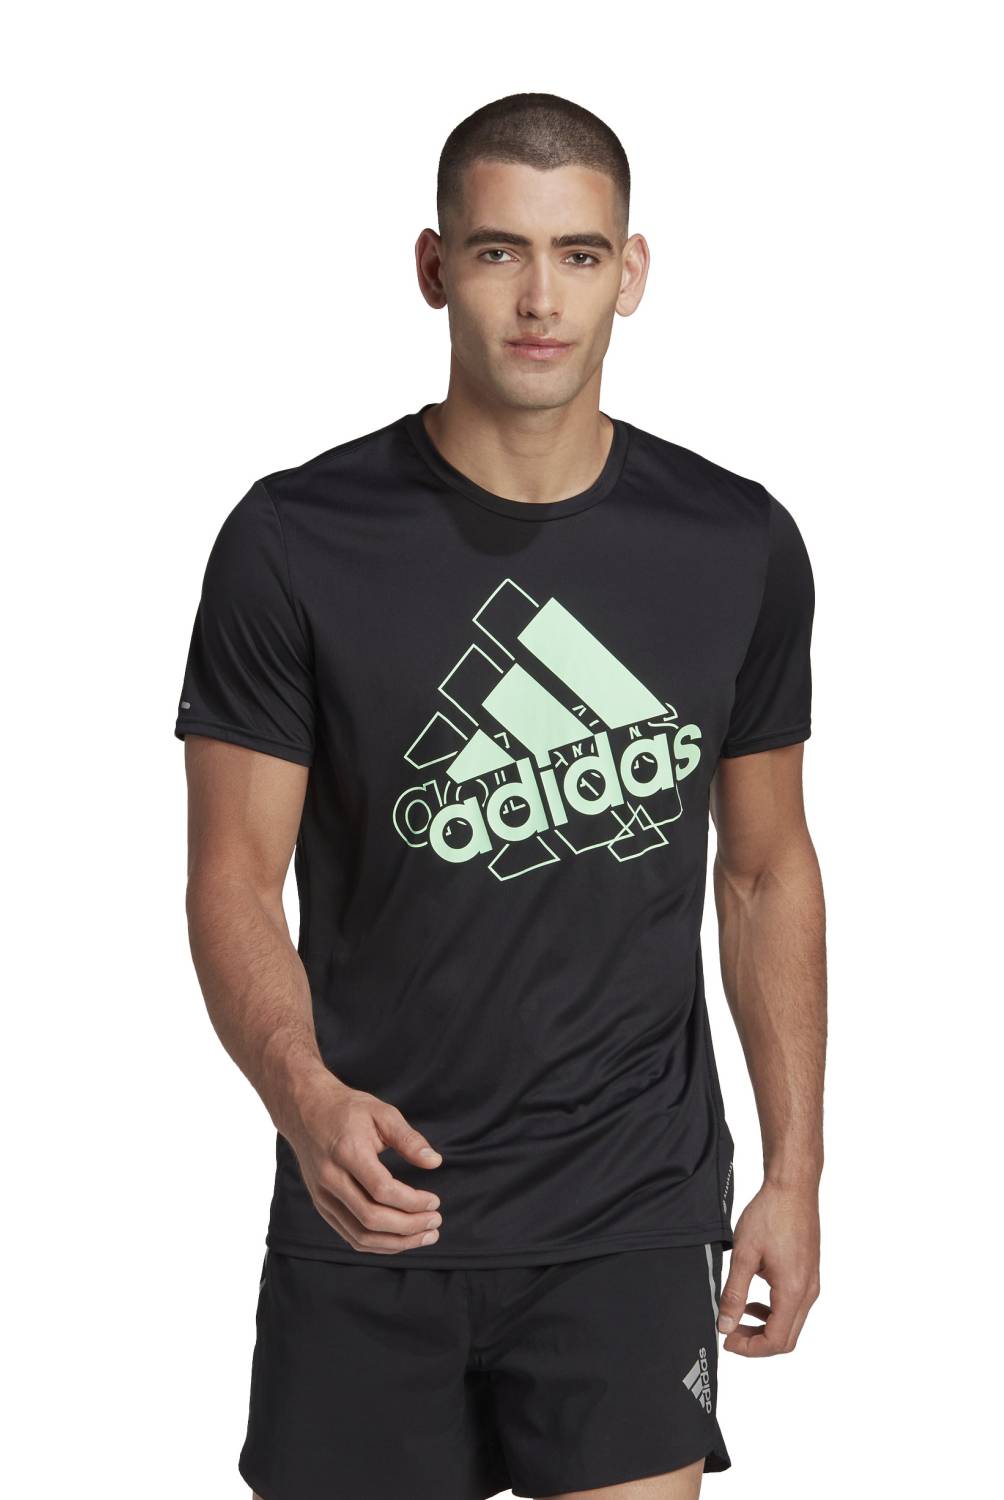 ADIDAS - Polera Running Sport Fit Hombre Adidas